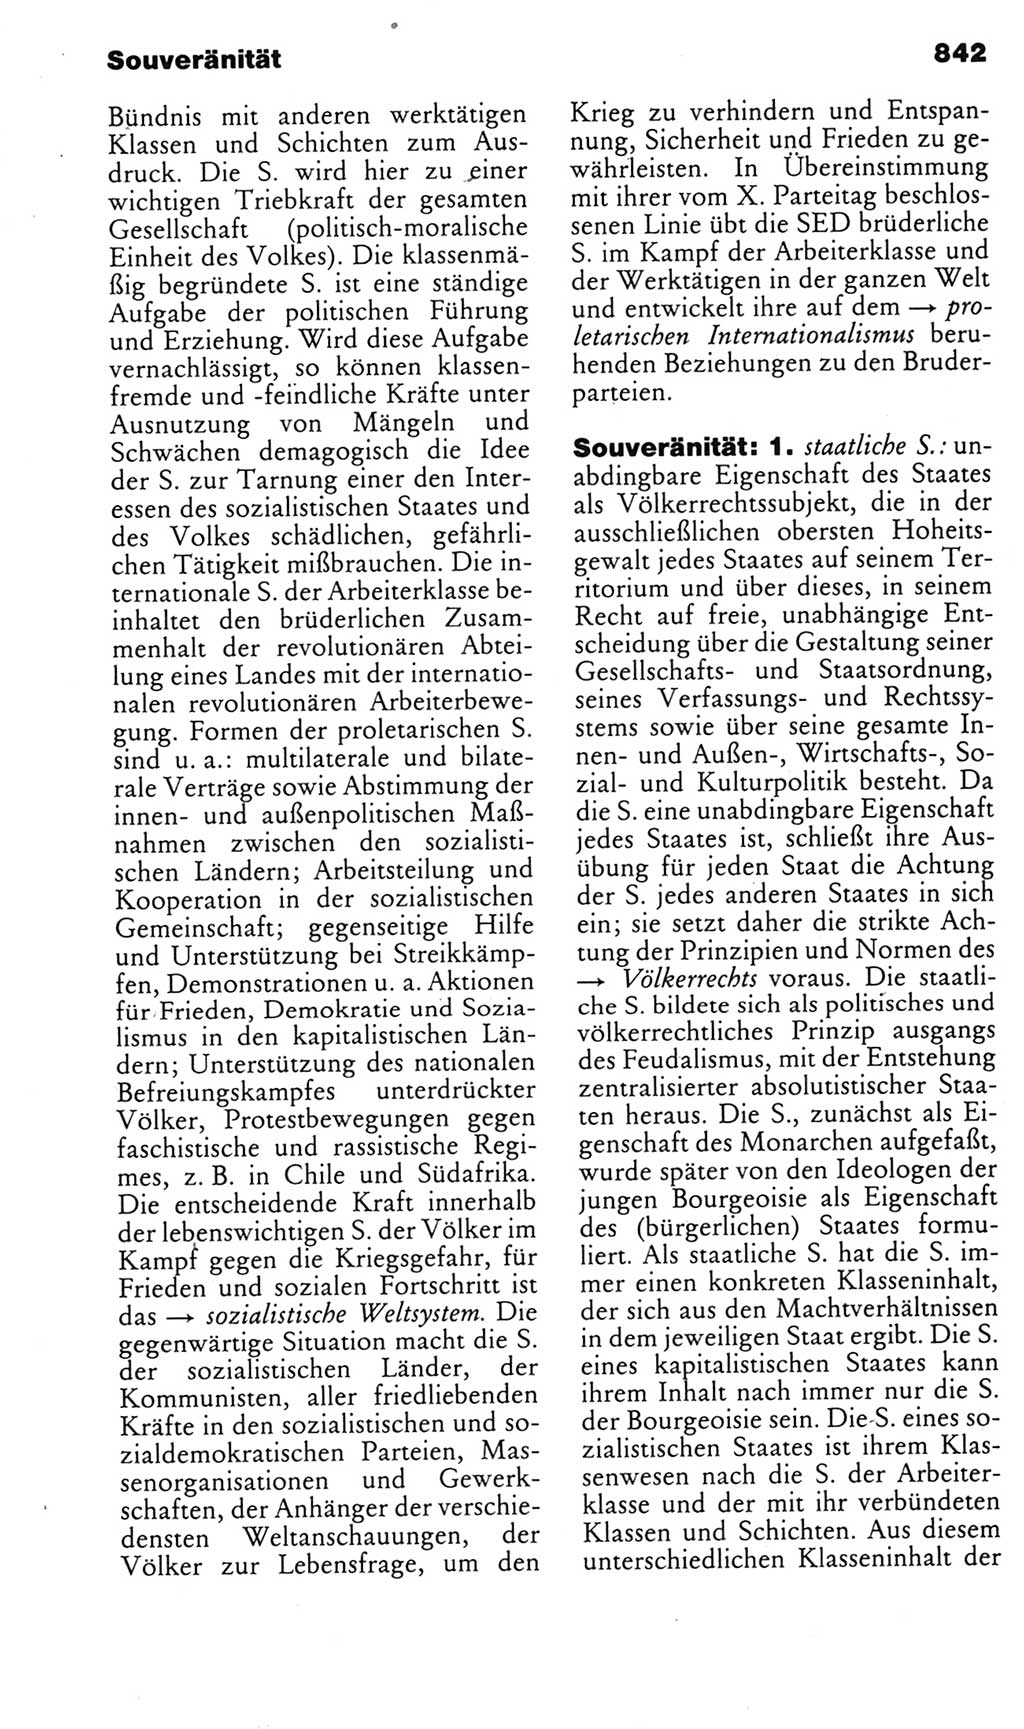 Kleines politisches Wörterbuch [Deutsche Demokratische Republik (DDR)] 1985, Seite 842 (Kl. pol. Wb. DDR 1985, S. 842)